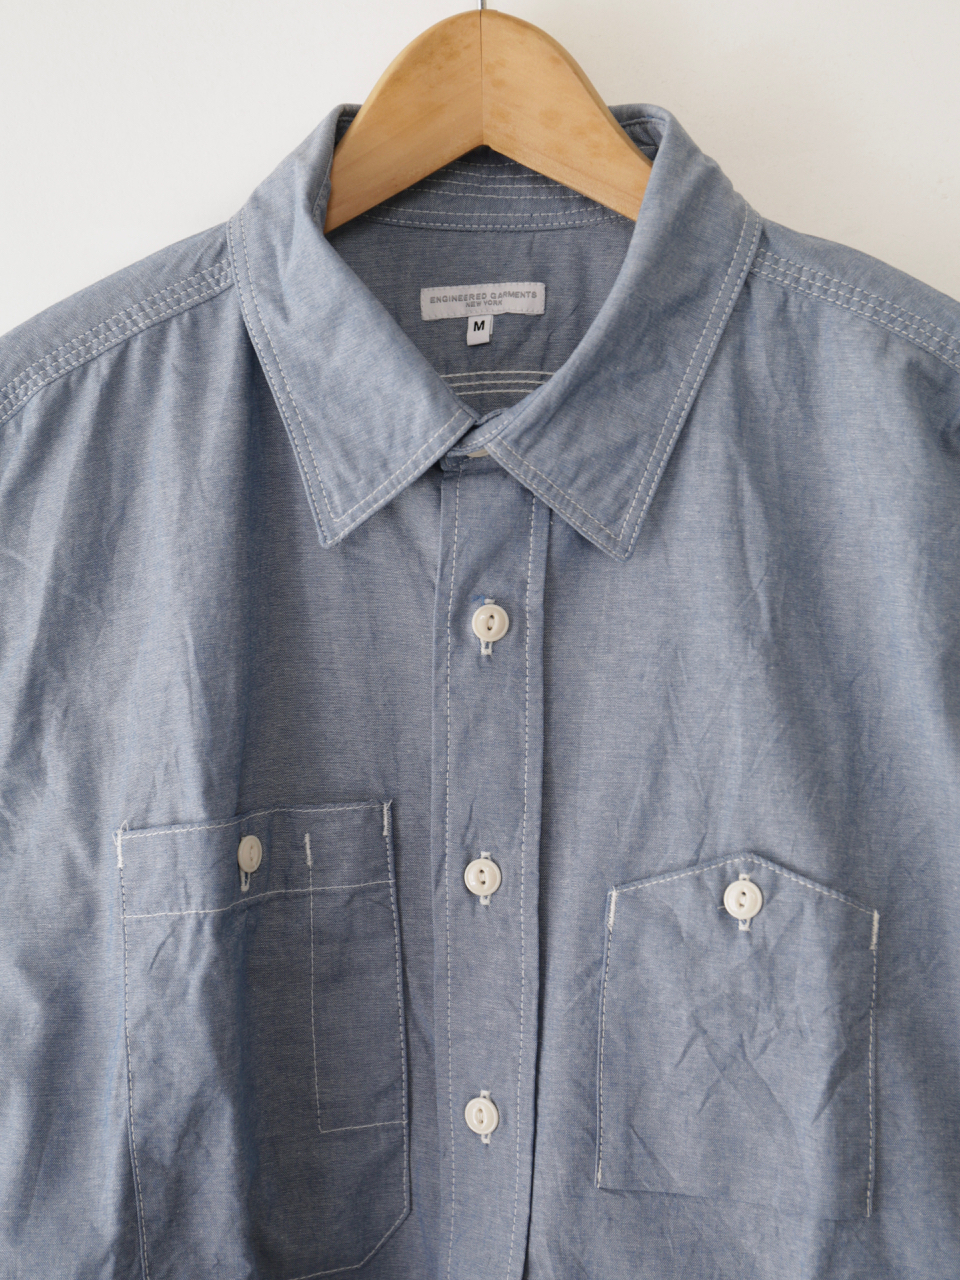 Engineered Garments Work Shirt - Cotton Chambray|セレクトショップ ...